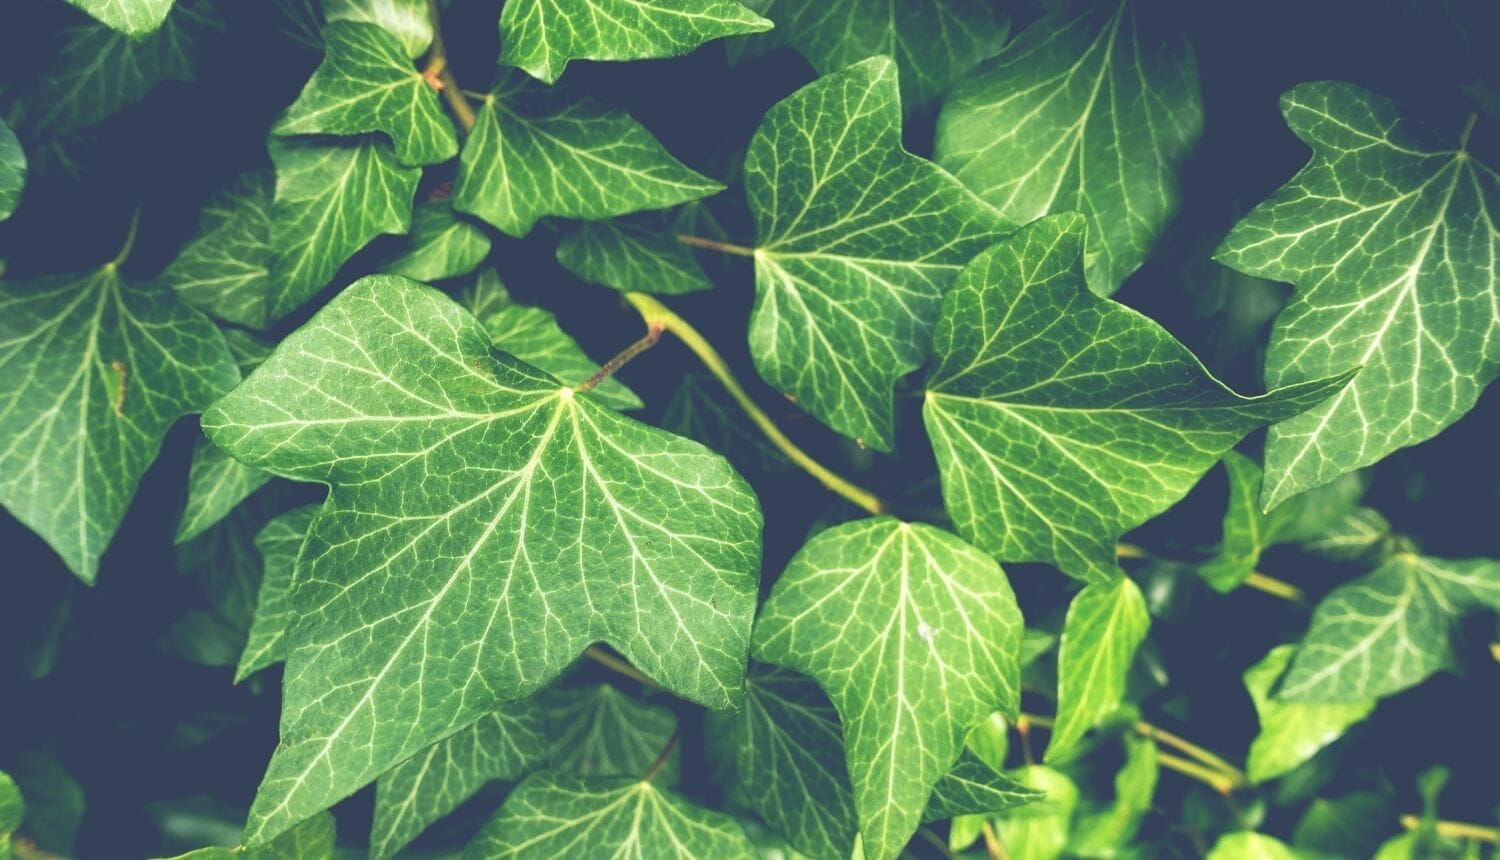 Luna Herbs_Wildkräuter Blog_ 8 sekundäre Pflanzenstoffe die Du kennen solltest6